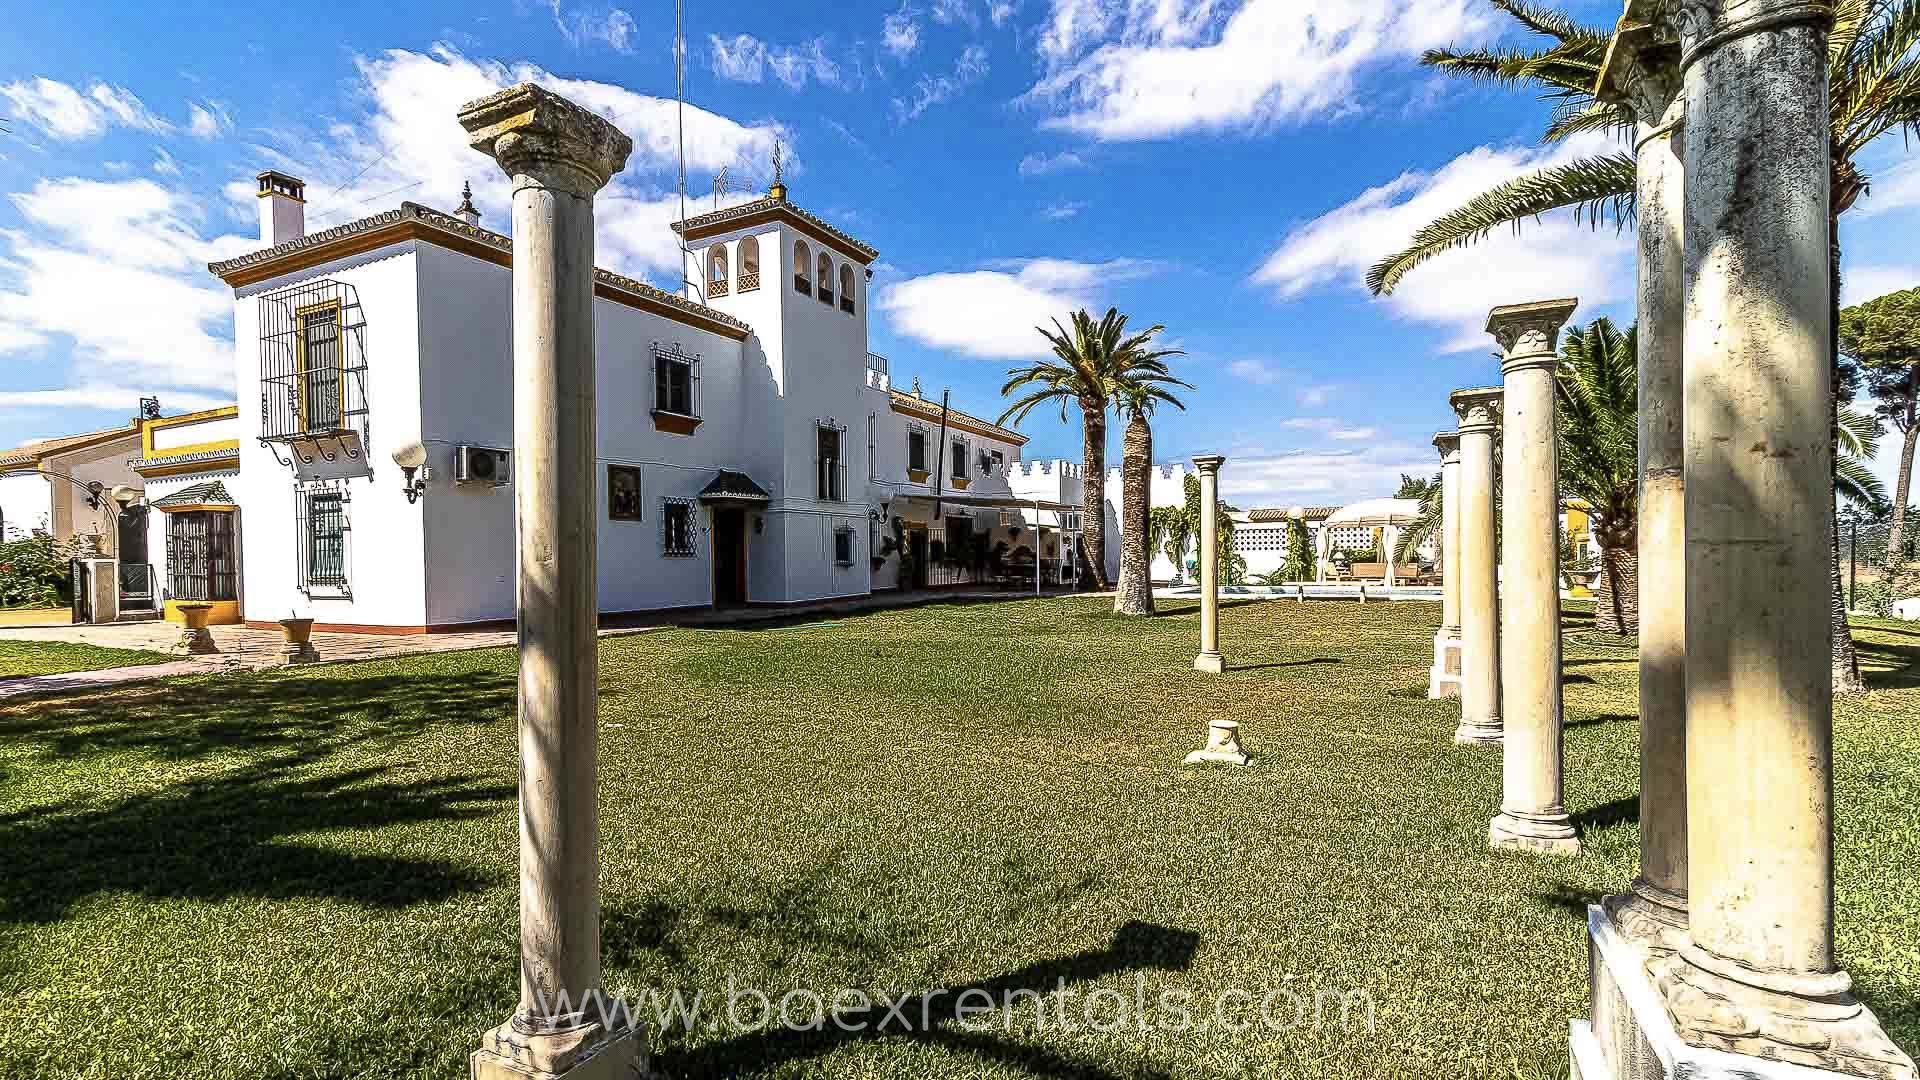 Hacienda en la Campiña de Sevilla. Visita el sur de España